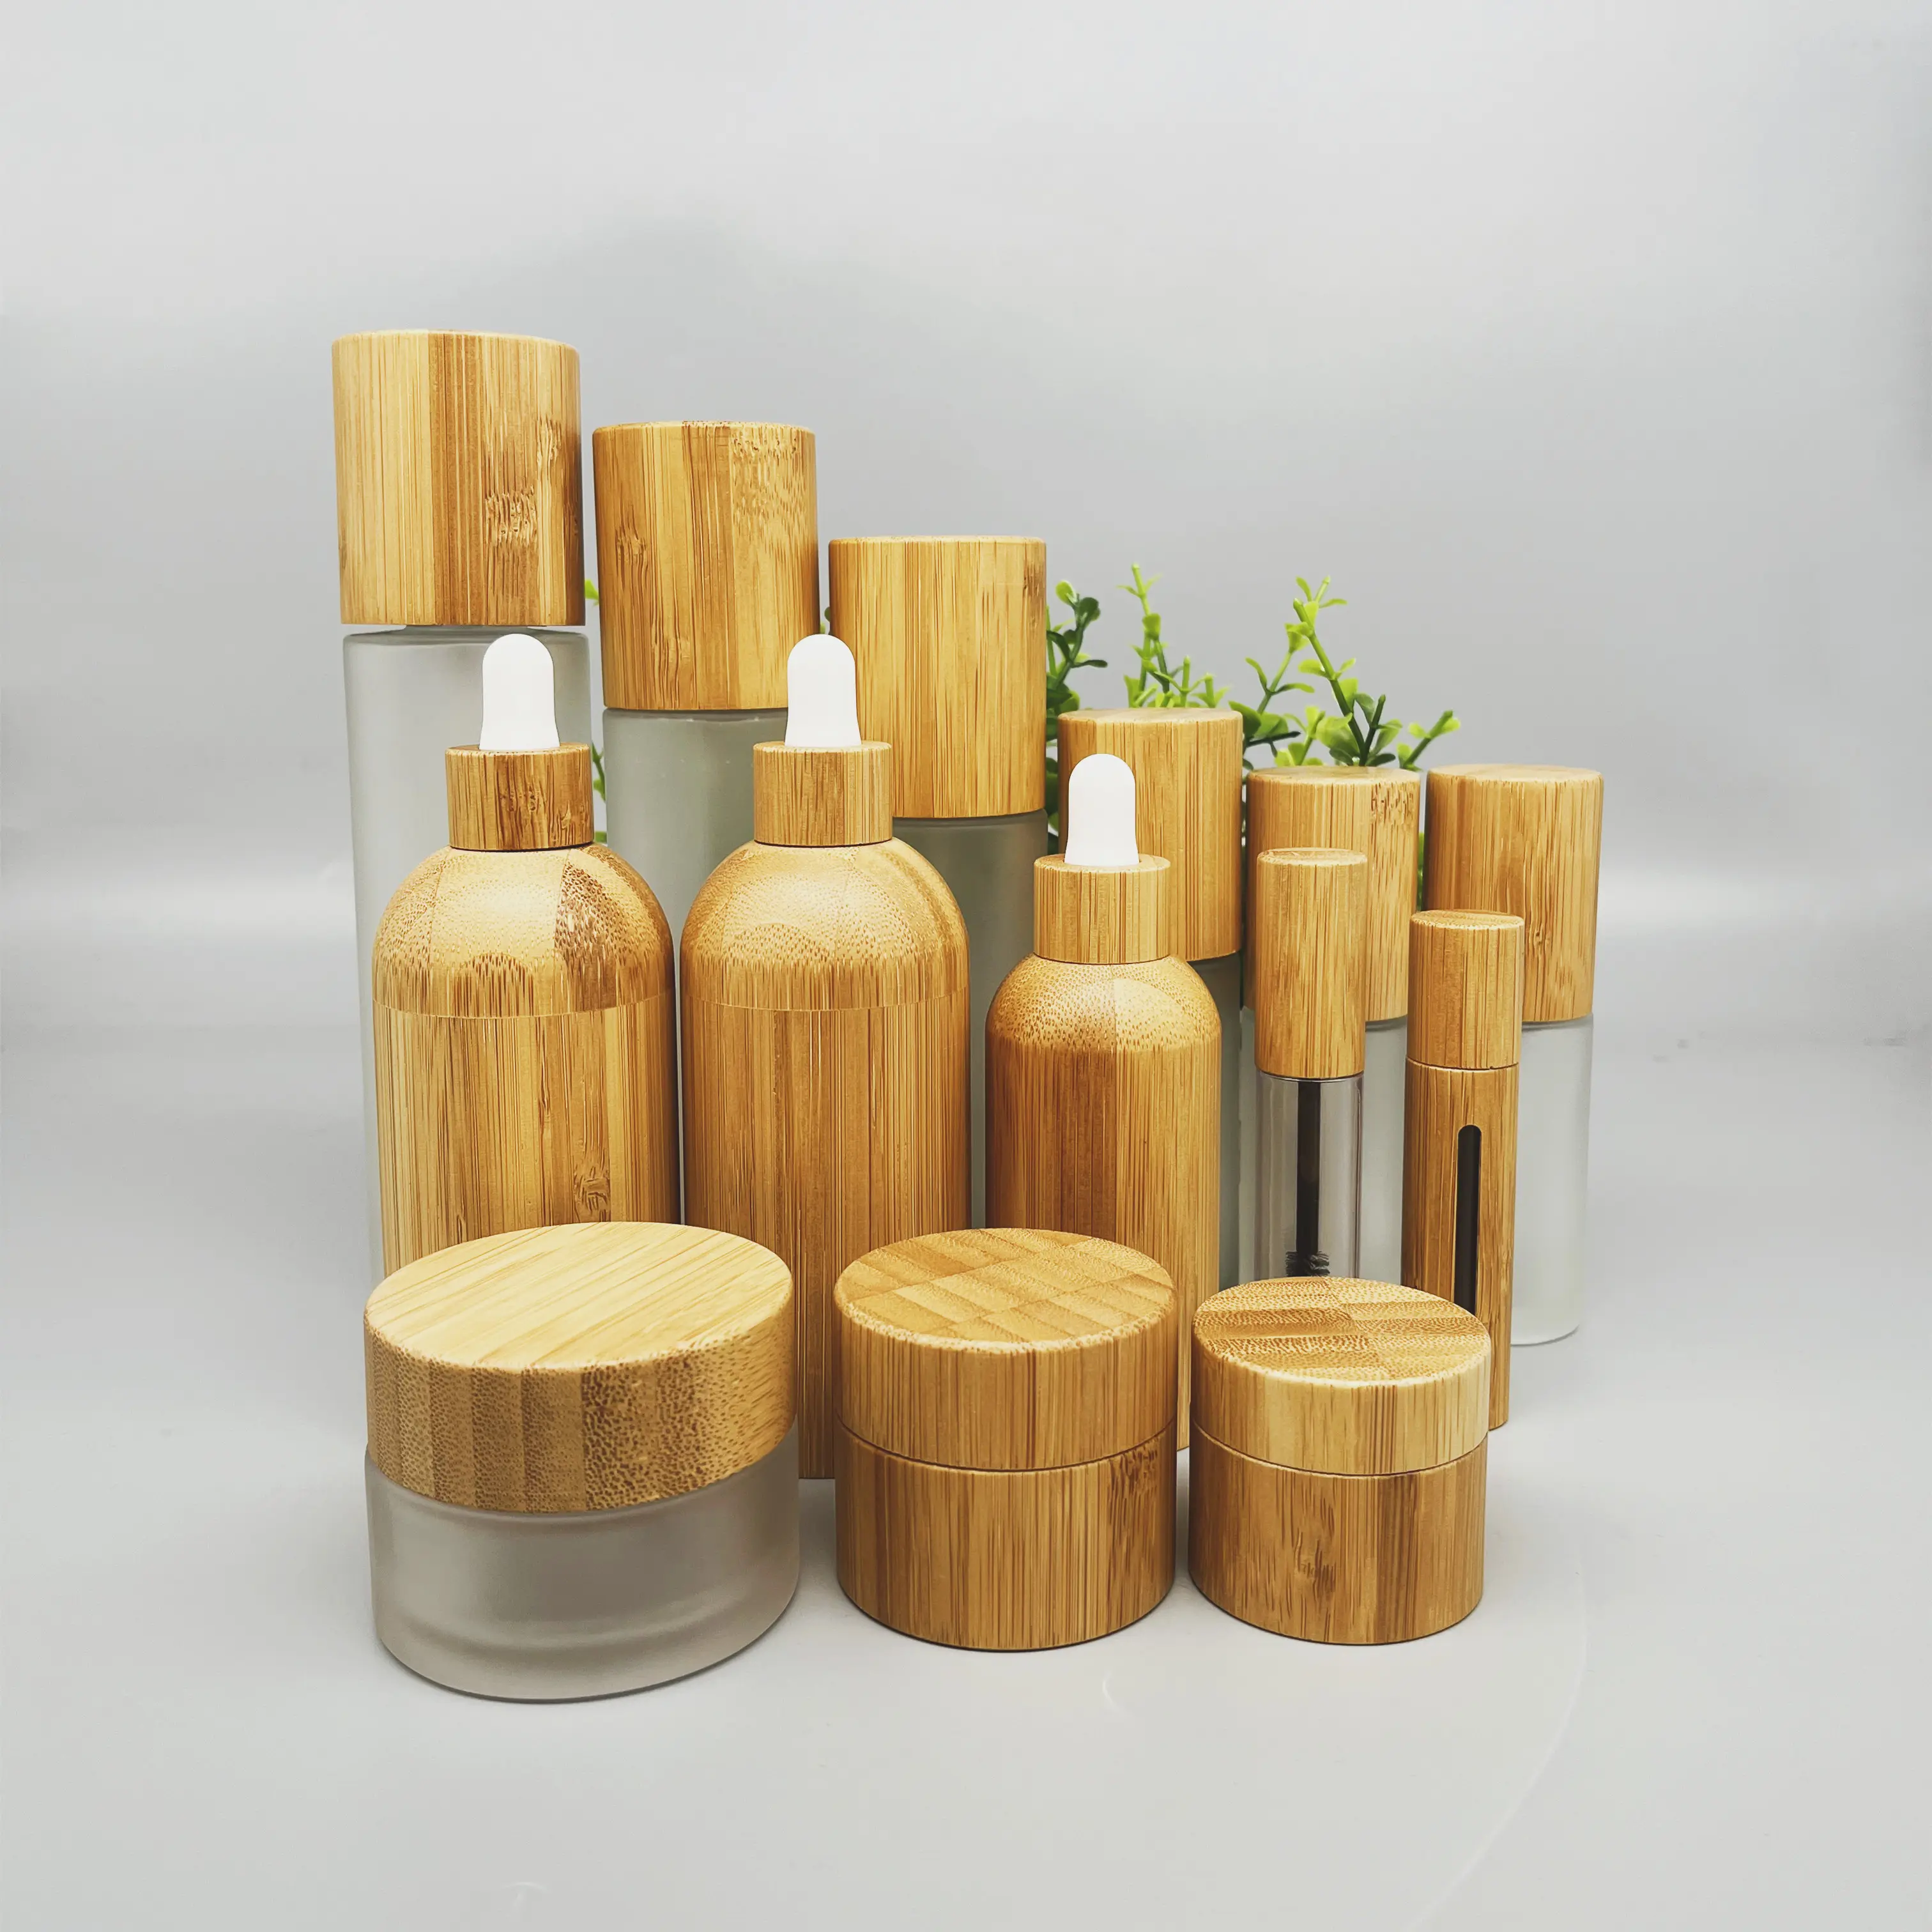 Vente en gros de cosmétiques en bambou 100% biodégradables, bouteilles en verre dépoli sur mesure avec couvercles en bambou